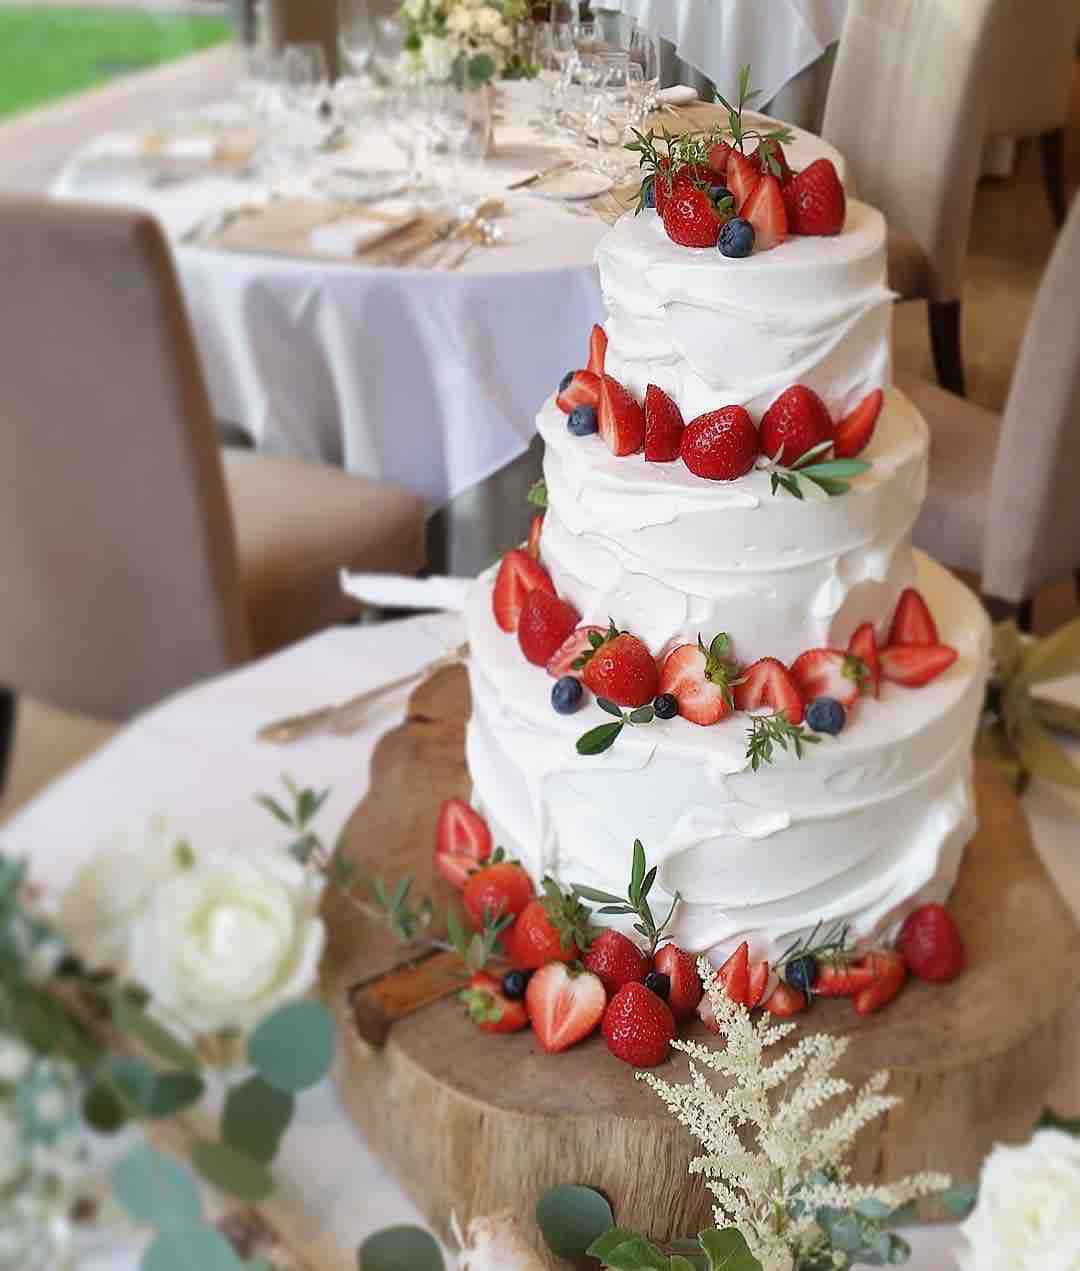 18 09最新ウェディングケーキ一覧 インスタで人気の素敵なウェディングケーキご紹介 結婚式情報大学